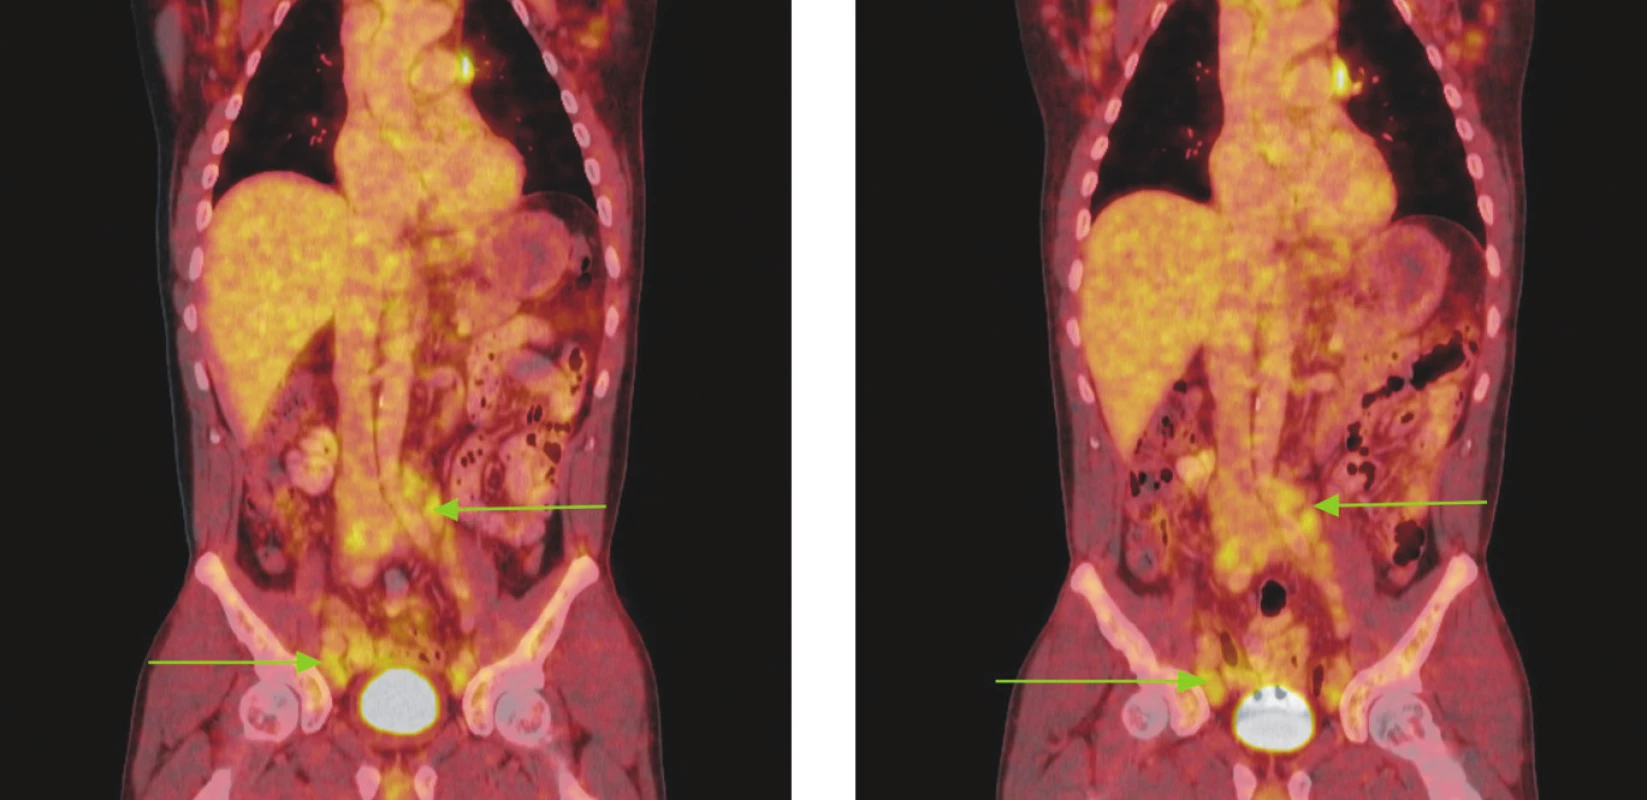 Série PET/CT snímků u nemocného s lymfomem z plášťových buněk před léčbou a po 2 cyklech léčby. Na prvním snímku jsou patrné zvětšené lymfatické uzliny vykazující hypermetabolismus glukózy v retroperitoneu a podél ilických tepen, nad tříselnými vazy a v tříslech. V některých lokalizacích lymfatické uzliny splývají až v pakety. Na druhém snímku přetrvávají zvětšené lymfatické uzliny a jejich pakety s hypermetabolismem glukózy v identických lokalizacích jako při předchozím vyšetření. Nedošlo rovněž ke zmenšení velikosti uzlin, resp. jejich paketů.